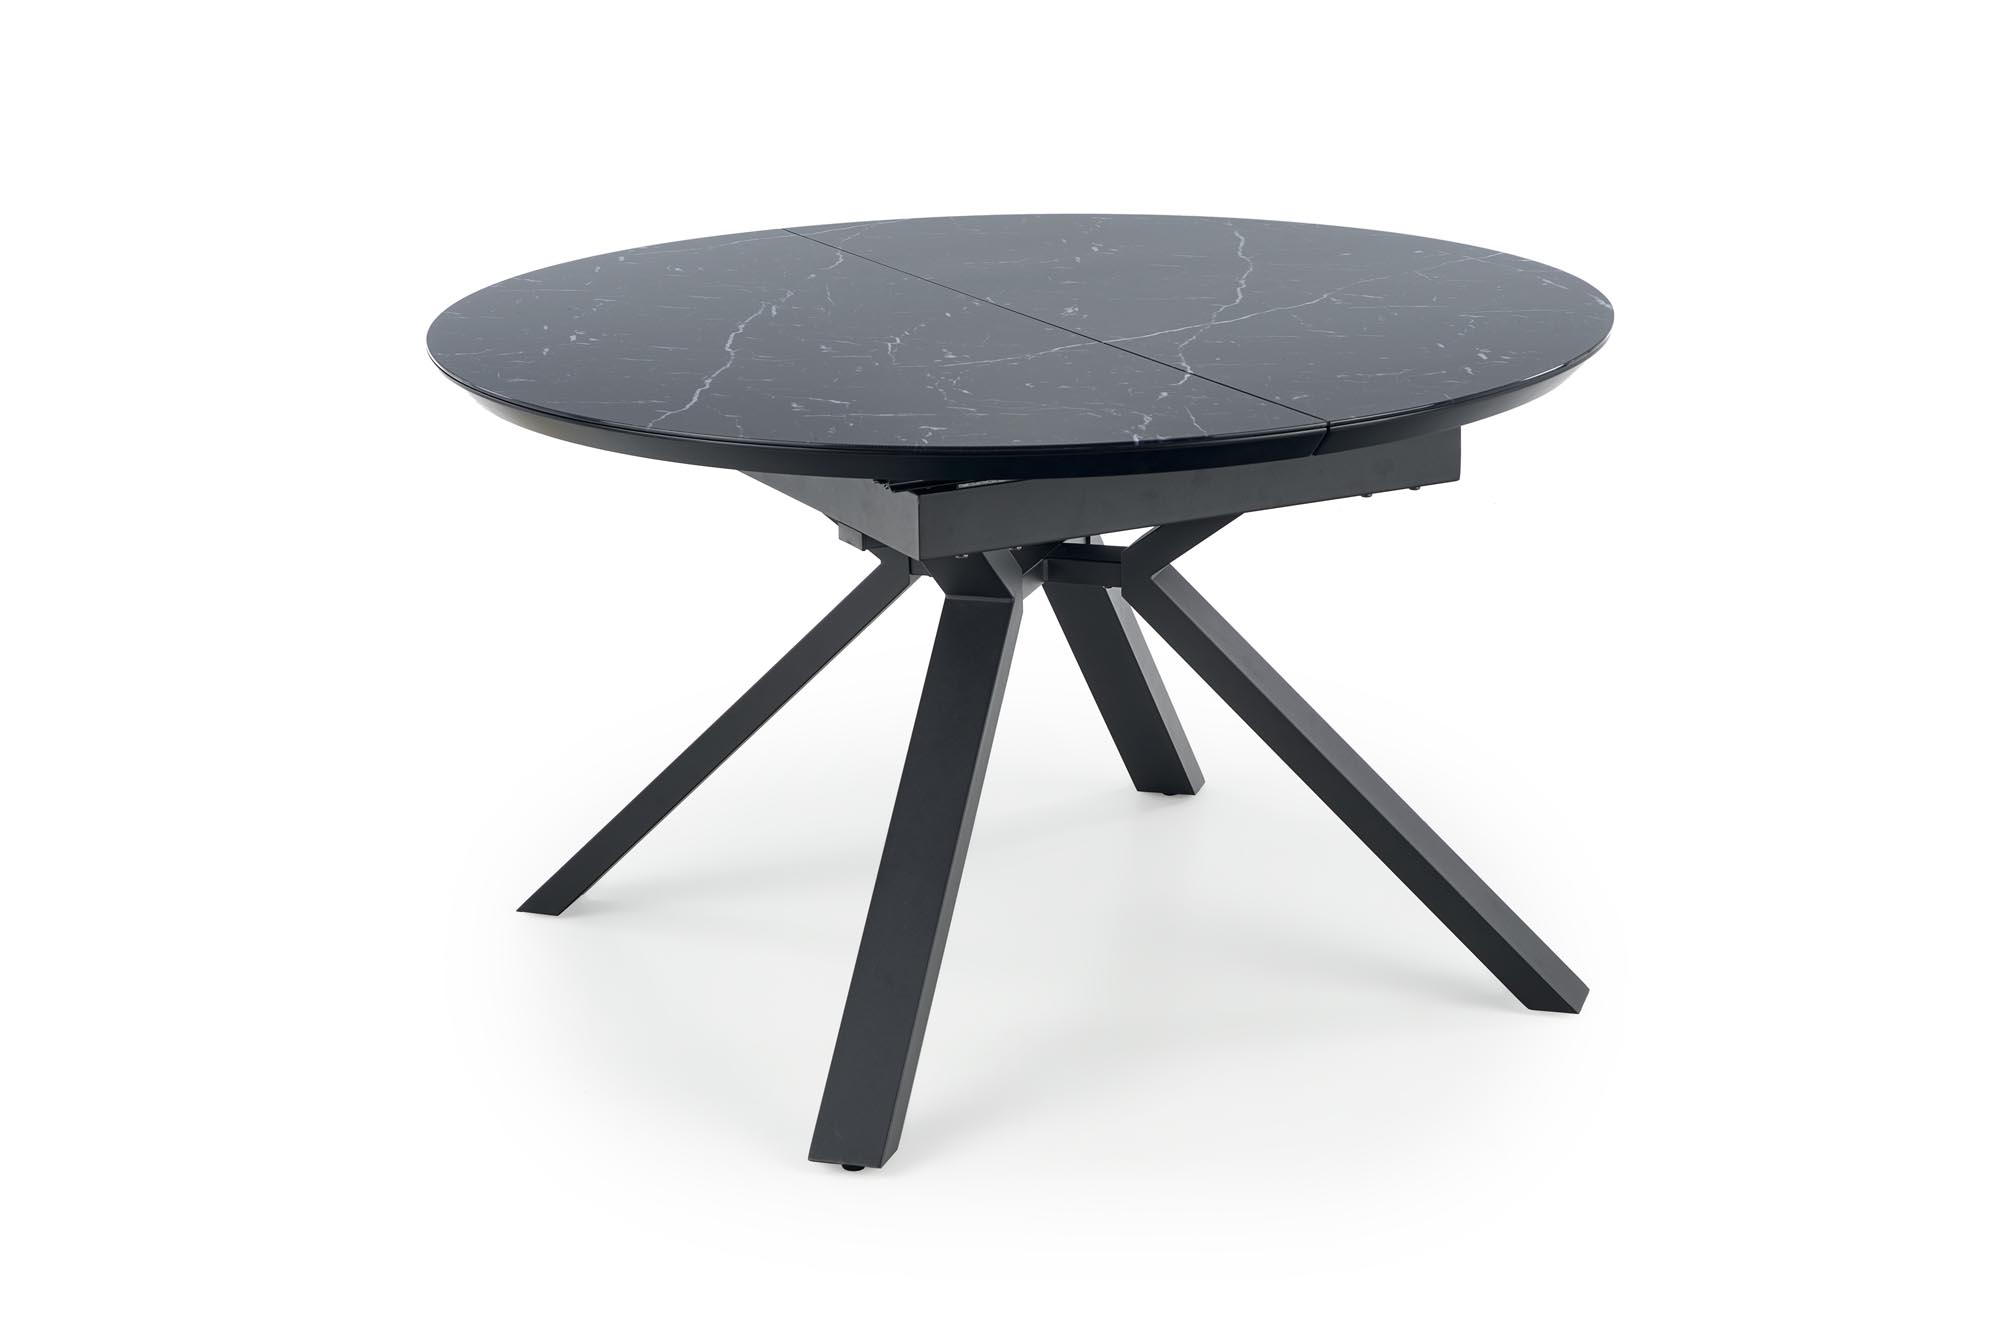 VERTIGO kanapéasztal, asztallap - fekete márvány, lábak - fekete  vertigo stůl rozkládací, Deska - Fekete mramor, Nohy - Fekete